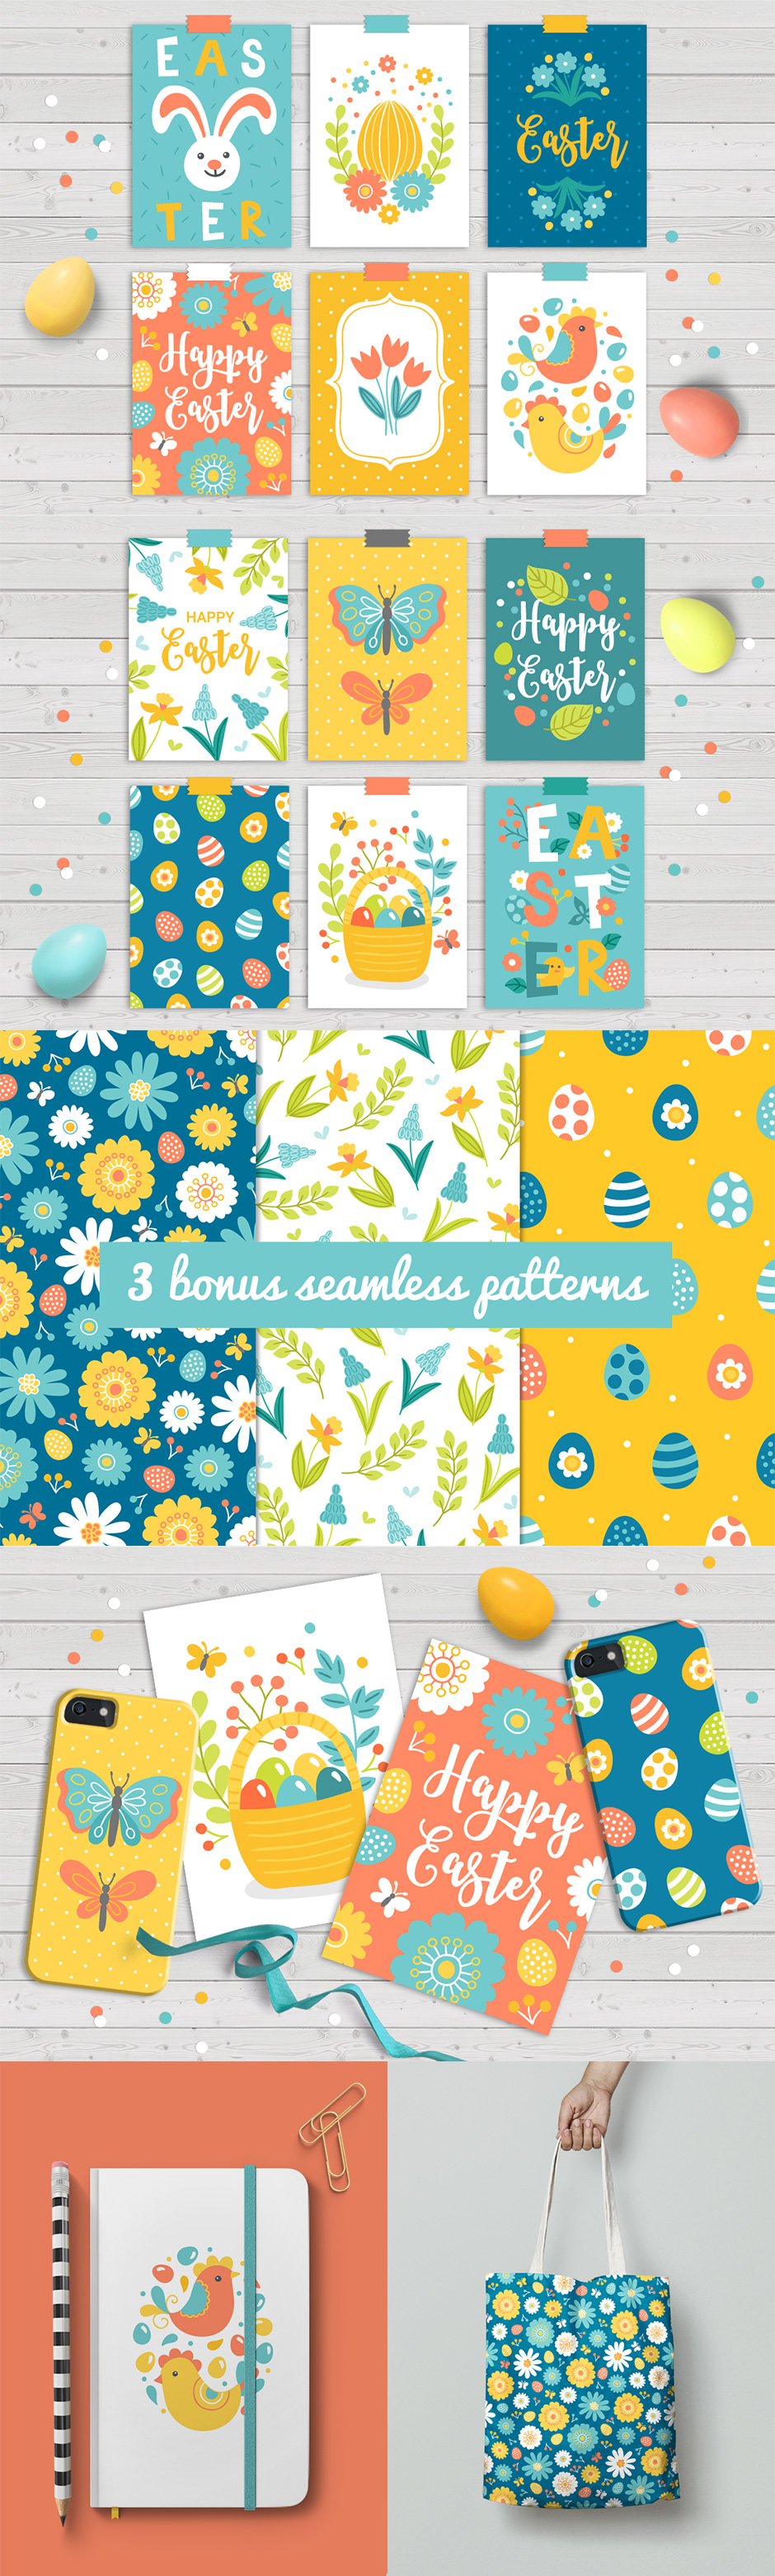 12 Easter Cards & Bonus Patterns